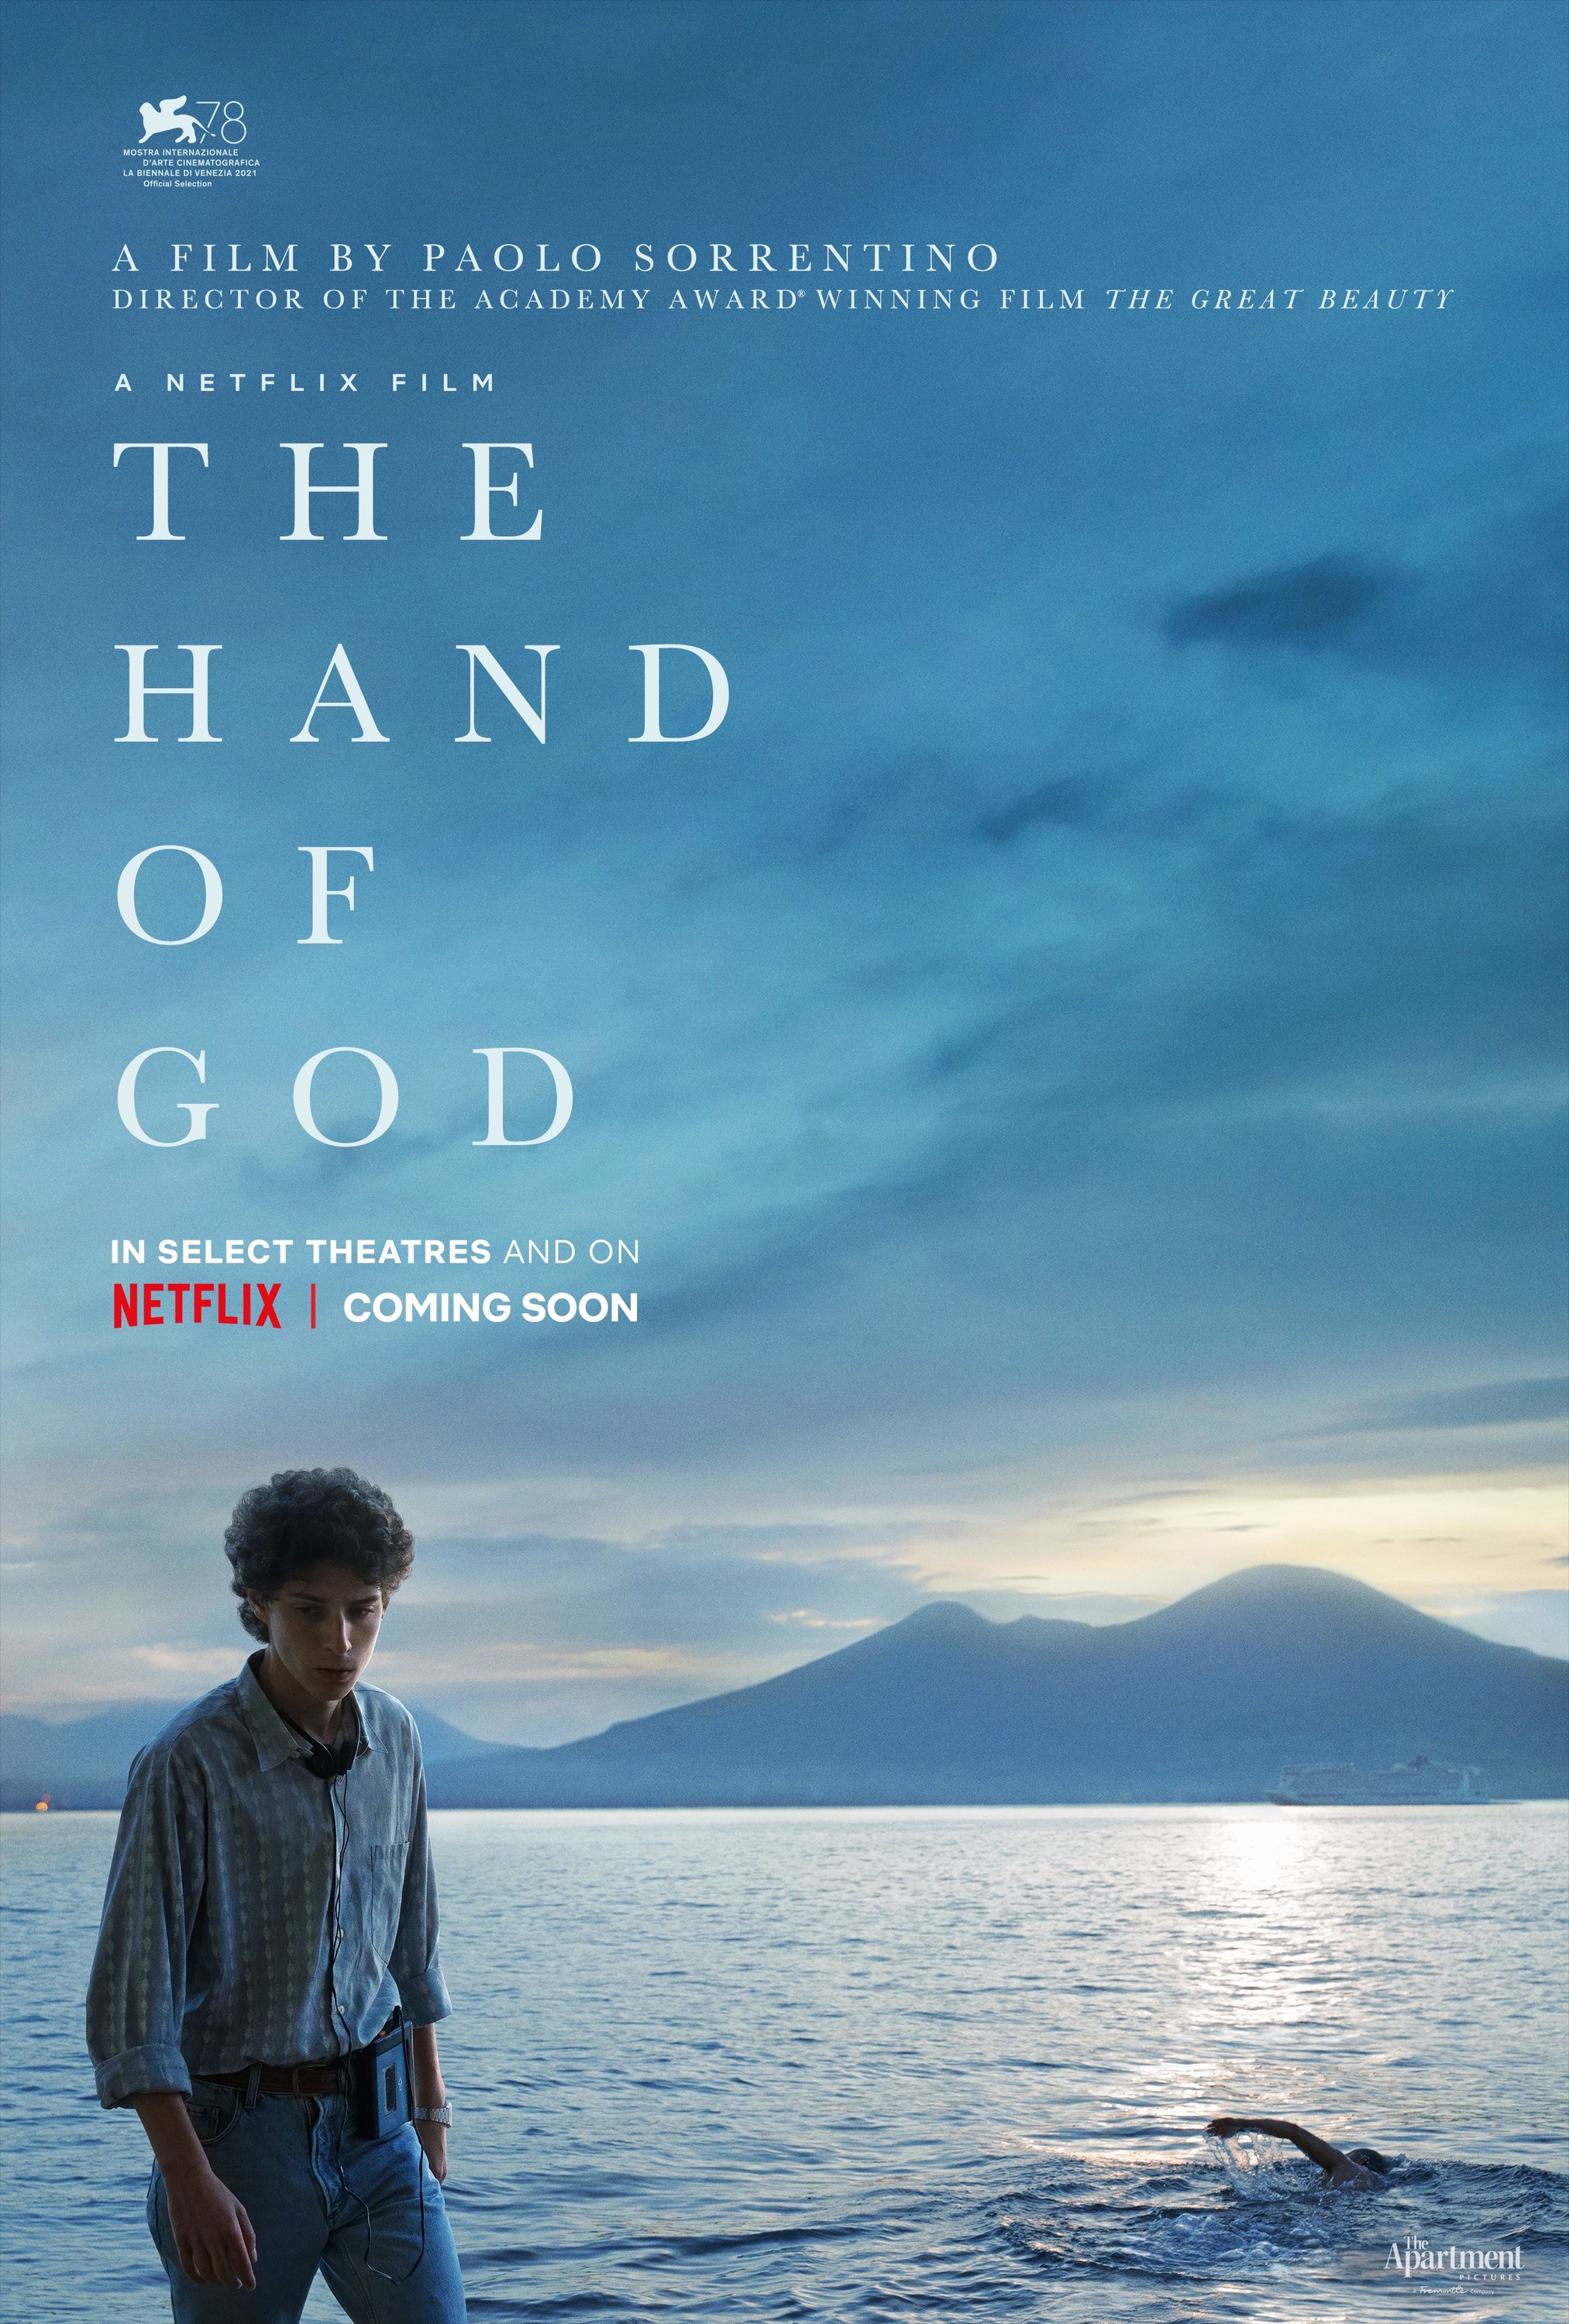 Mega Sized Movie Poster Image for È stata la mano di Dio (#1 of 5)